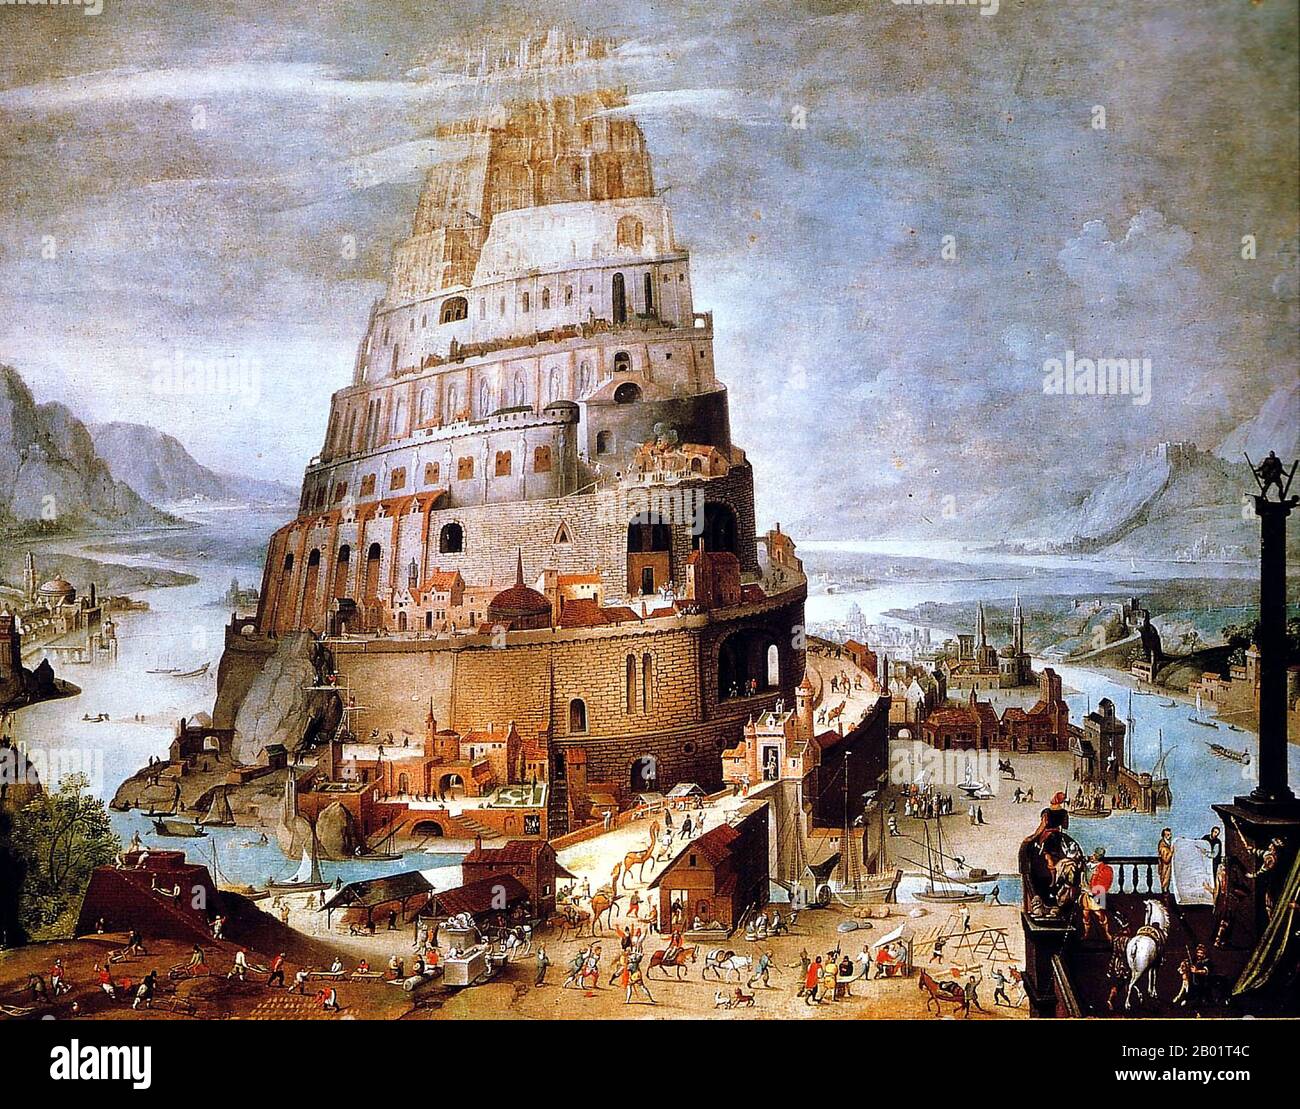 Belgien/Irak/Mesopotamien: "Das Gebäude des Turms von Babel". Öl auf Tafelgemälde von Abel Grimmer (1570-1619), 17. Jahrhundert. Der Turm von Babel war nach dem Buch Genesis ein riesiger Turm, der in der Ebene von Shinar errichtet wurde. Nach der biblischen Erzählung kam eine vereinte Menschheit der Generationen nach der Großen Flut, die eine einzige Sprache sprach und aus dem Osten auswanderte, ins Land Shinar, wo sie beschlossen, eine Stadt mit einem Turm zu bauen, „mit seiner Spitze im Himmel... damit wir nicht auf der Erde verstreut werden“. Stockfoto